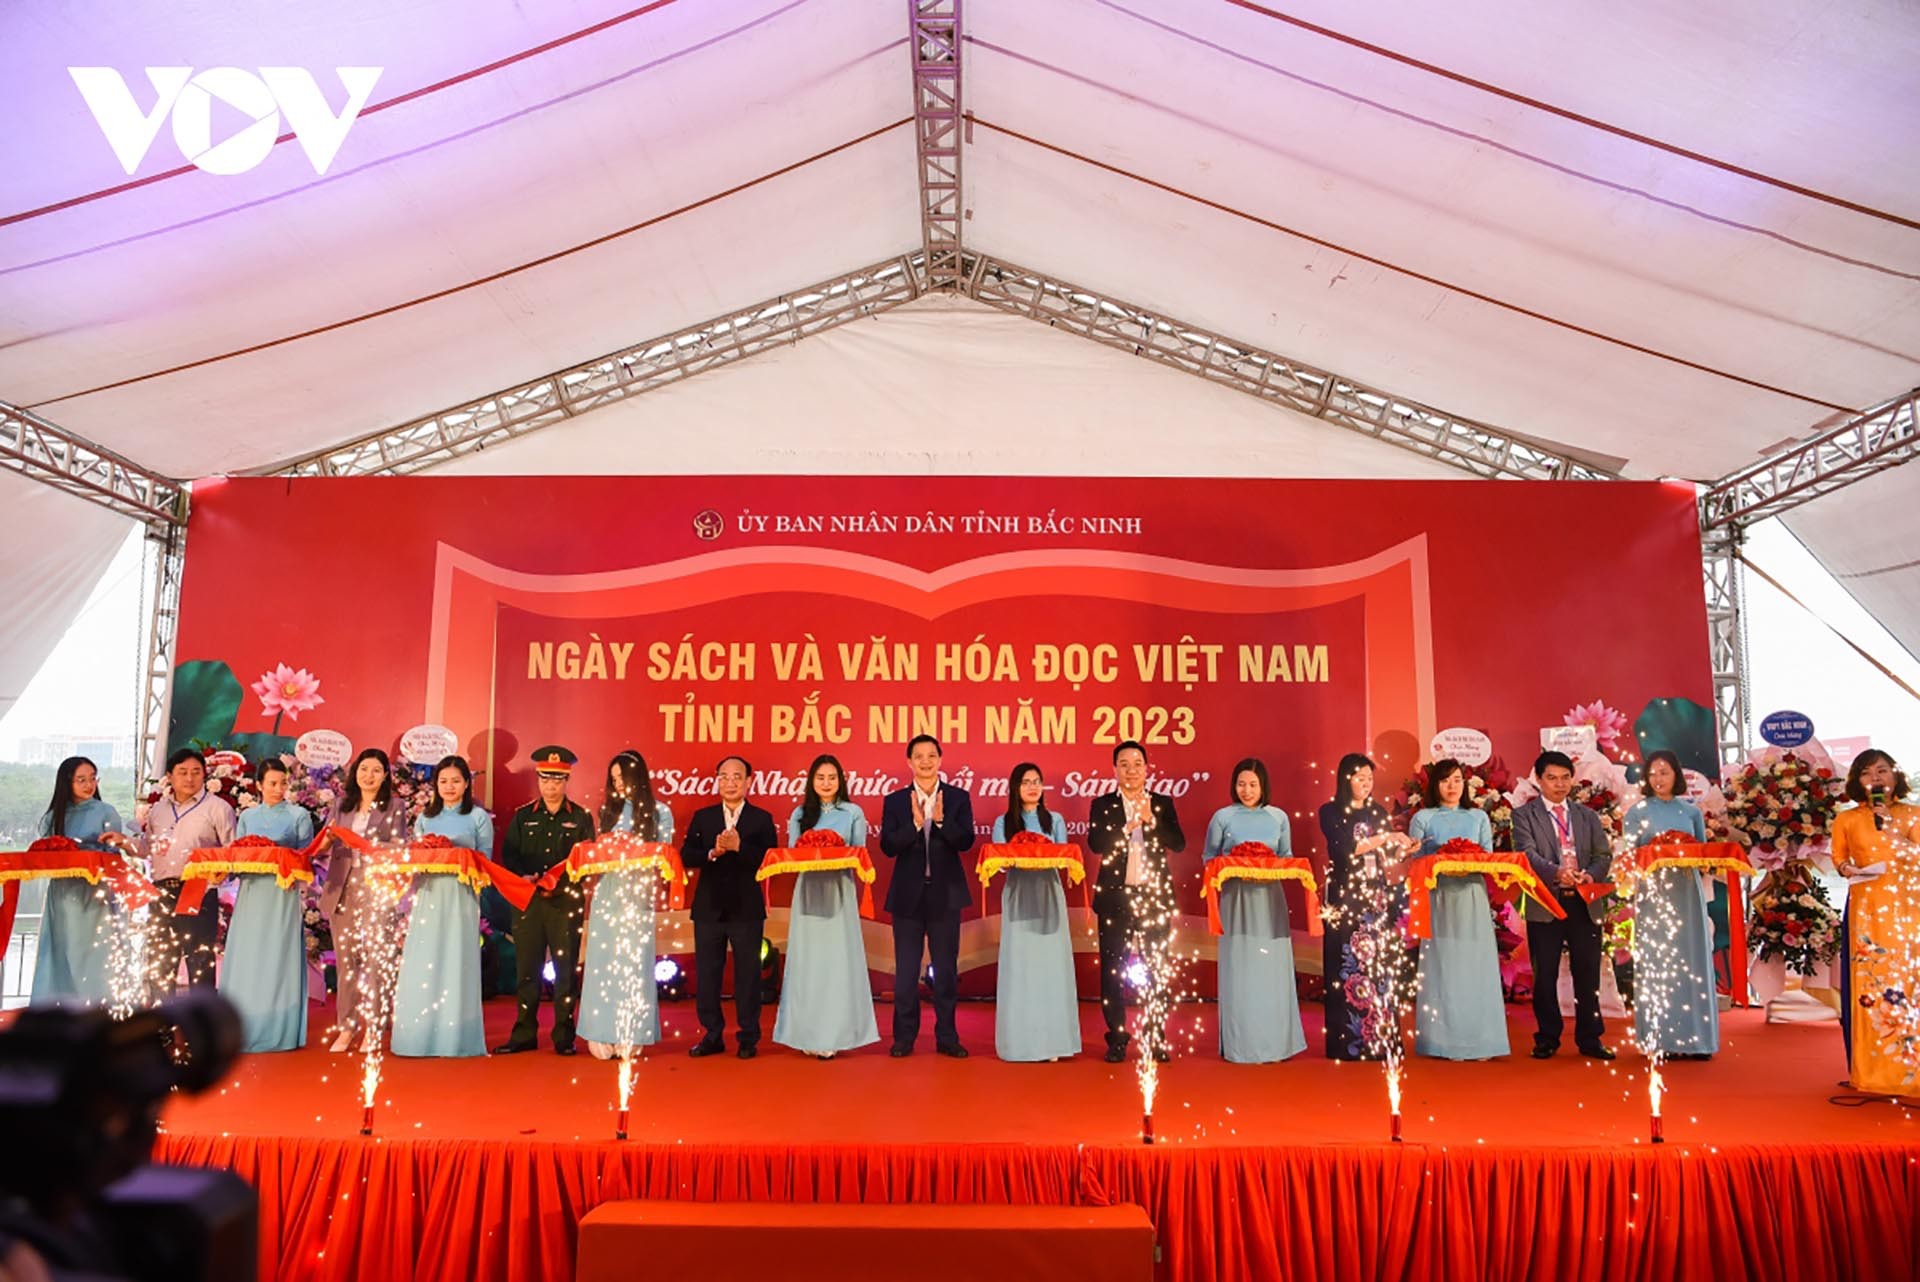 Ông Vương Quốc Tuấn Phó Chủ tịch UBND tỉnh Bắc Ninh cùng các đại biểu dự hội nghị cắt băng khai mạc Ngày Sách và Văn hóa đọc Việt Nam năm 2023. (Nguồn: VOV)